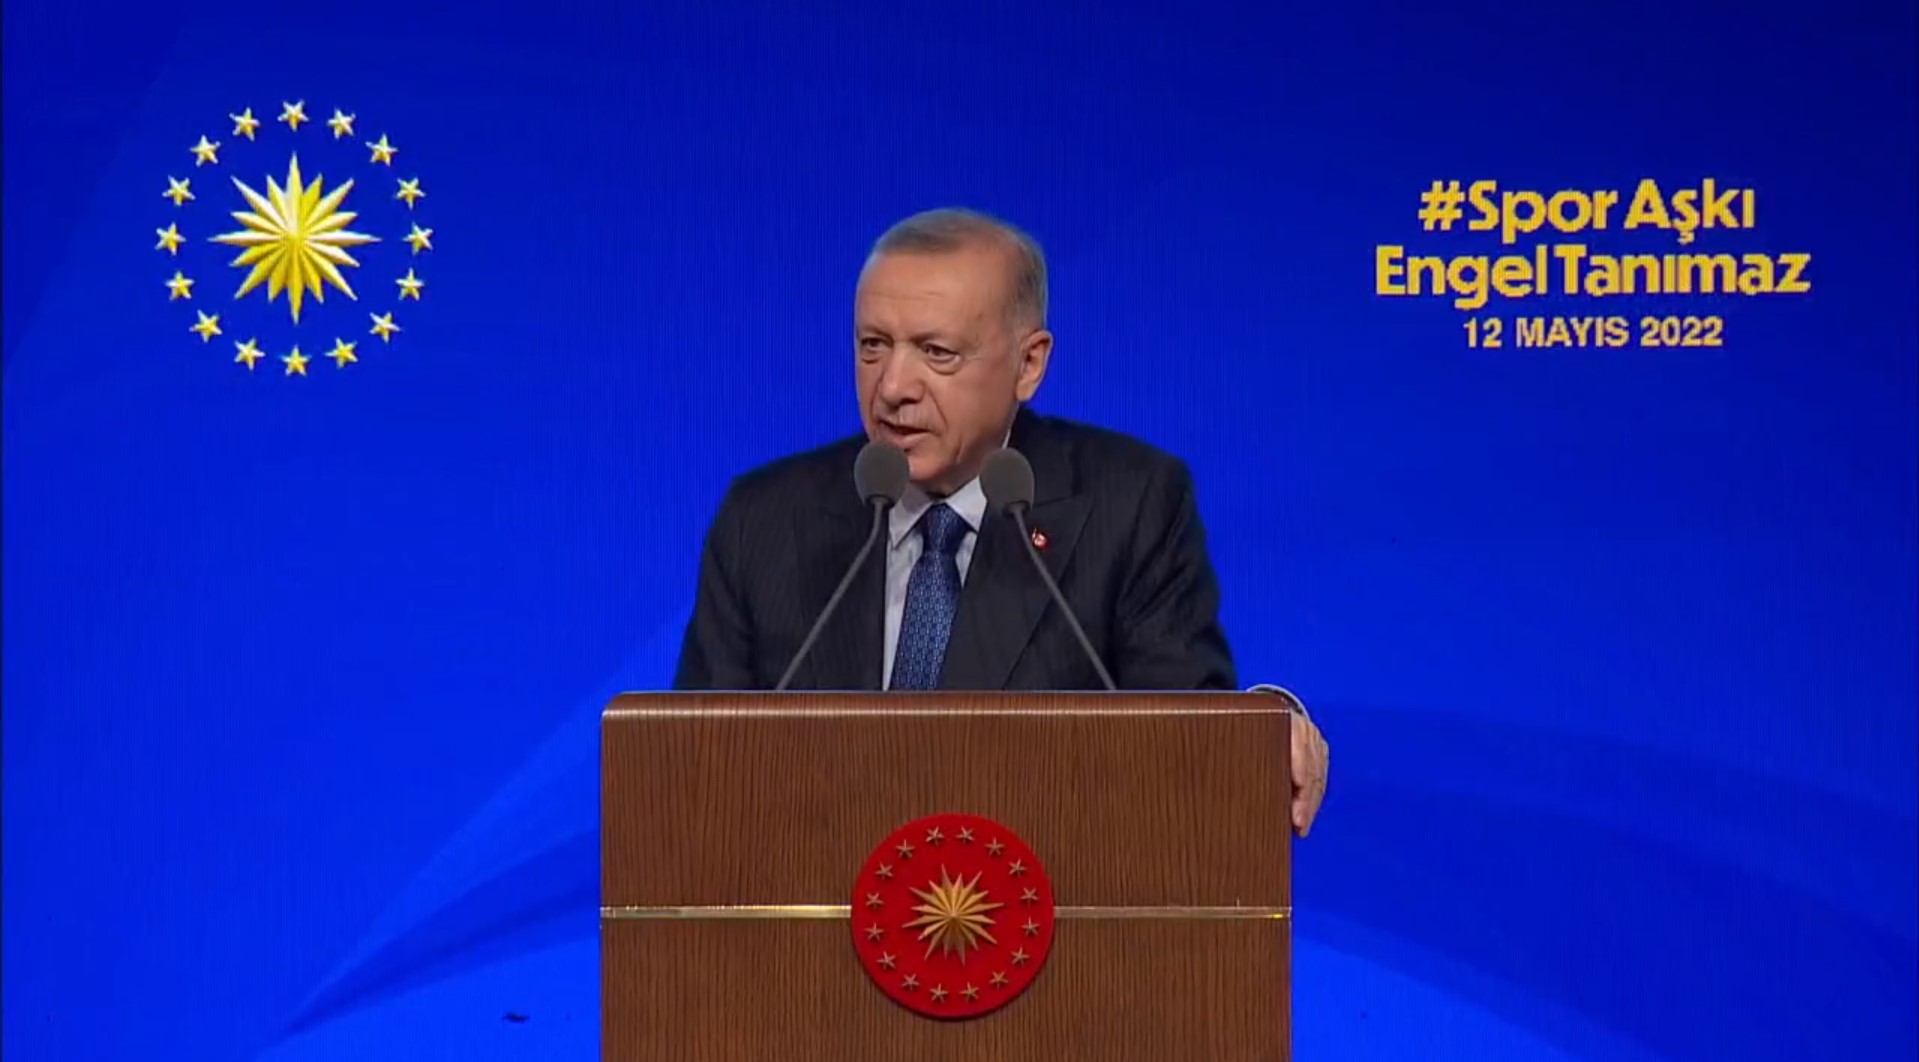 Cumhurbaşkanı Erdoğan, "Spor Aşkı Engel Tanımaz” projesi töreninde konuştu! Engelli kardeşlerimizi asla yok sayamayız, ne gerekiyorsa yapacağız